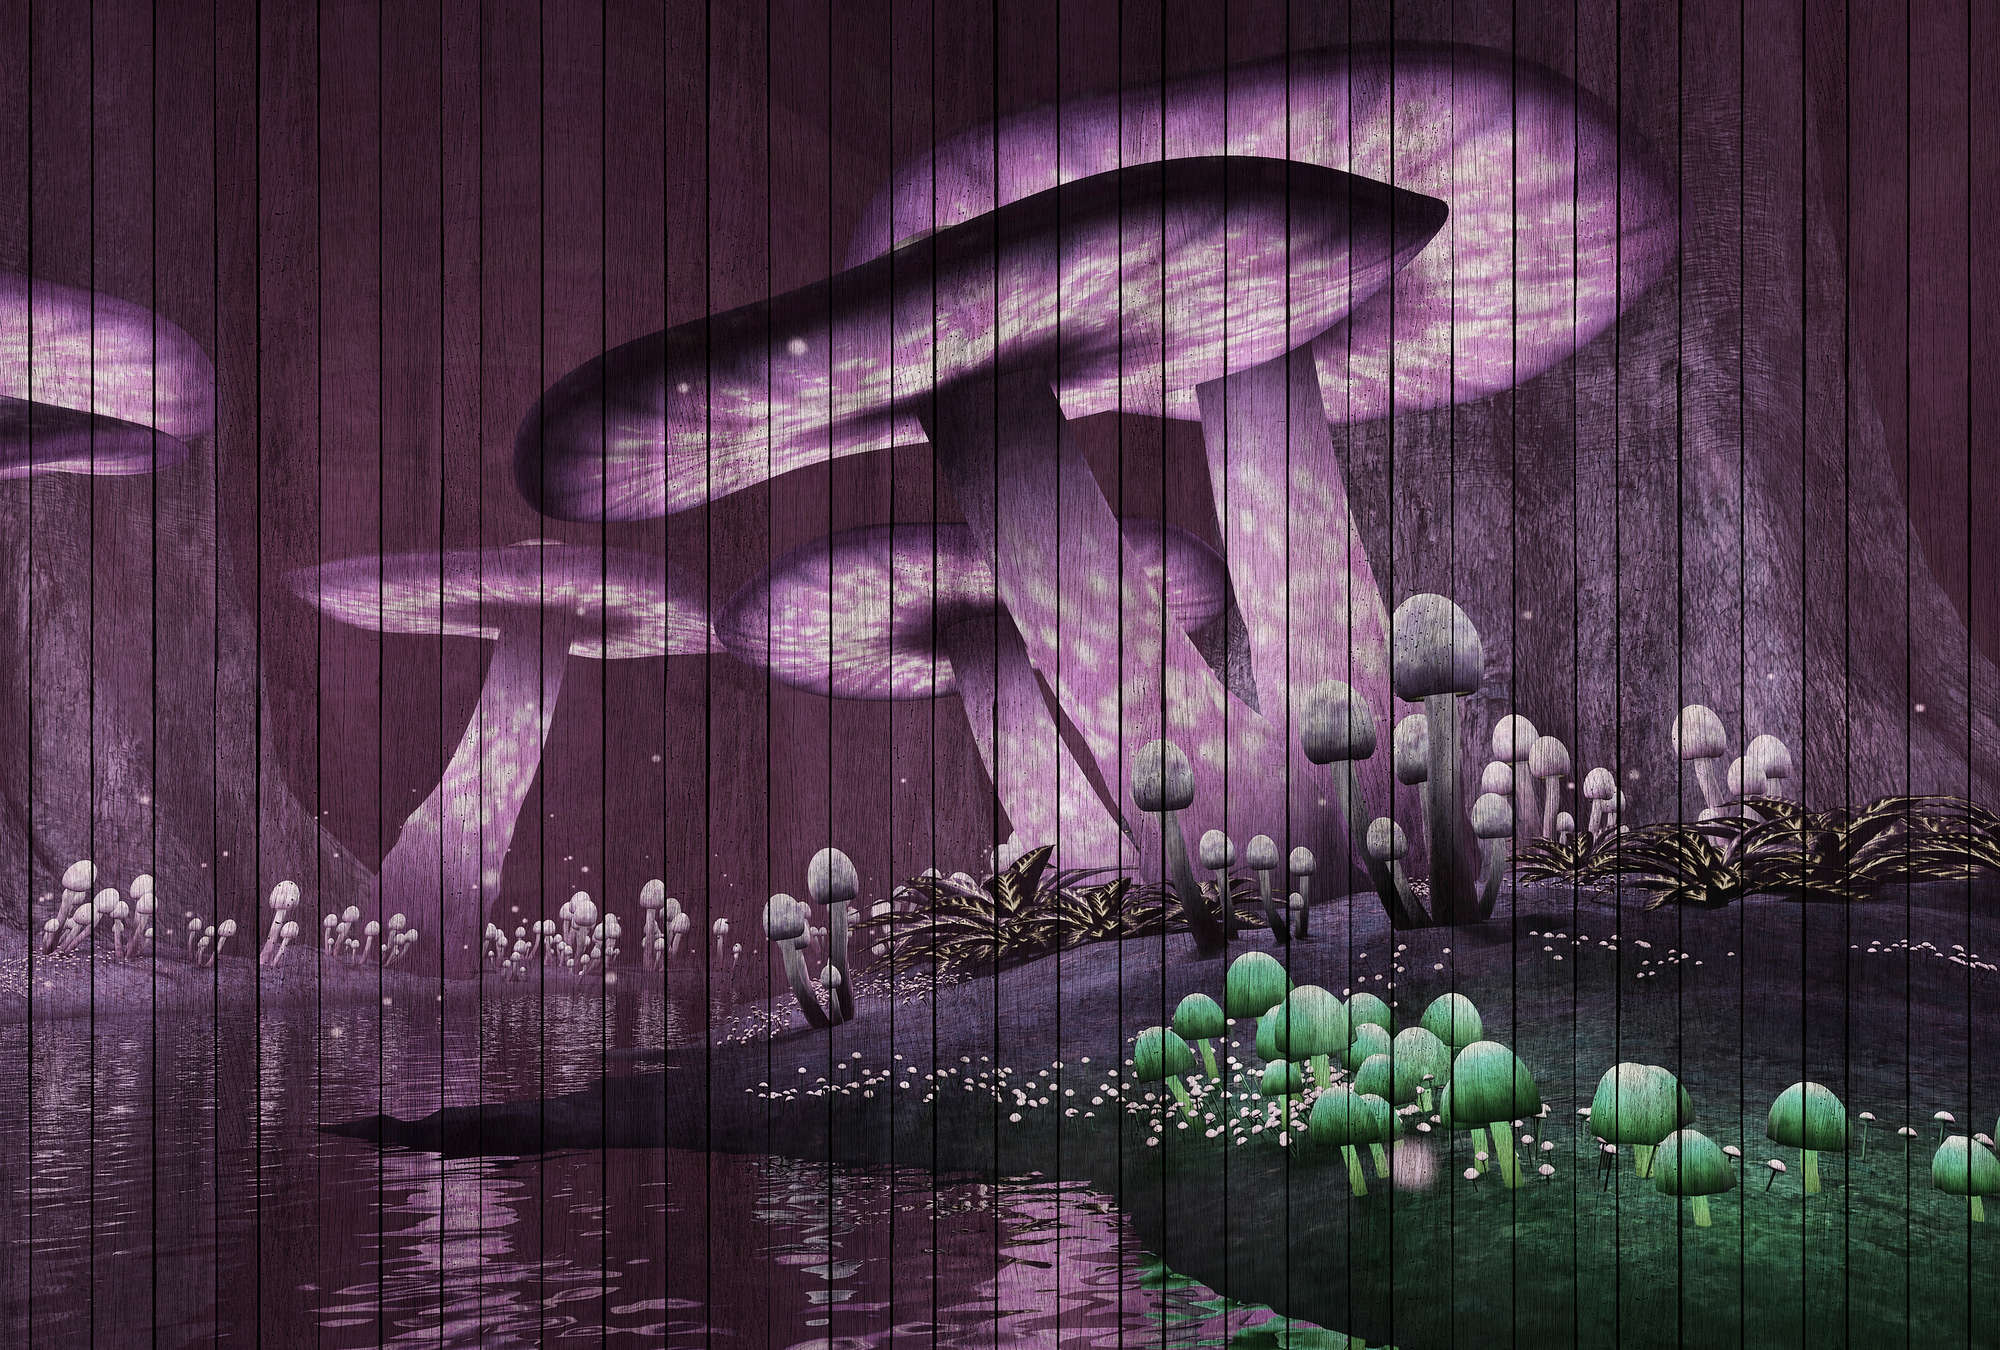             Fantasy 2 - Fotomurali foresta magica con struttura in pannelli di legno - Verde, Viola | Panno liscio opaco
        